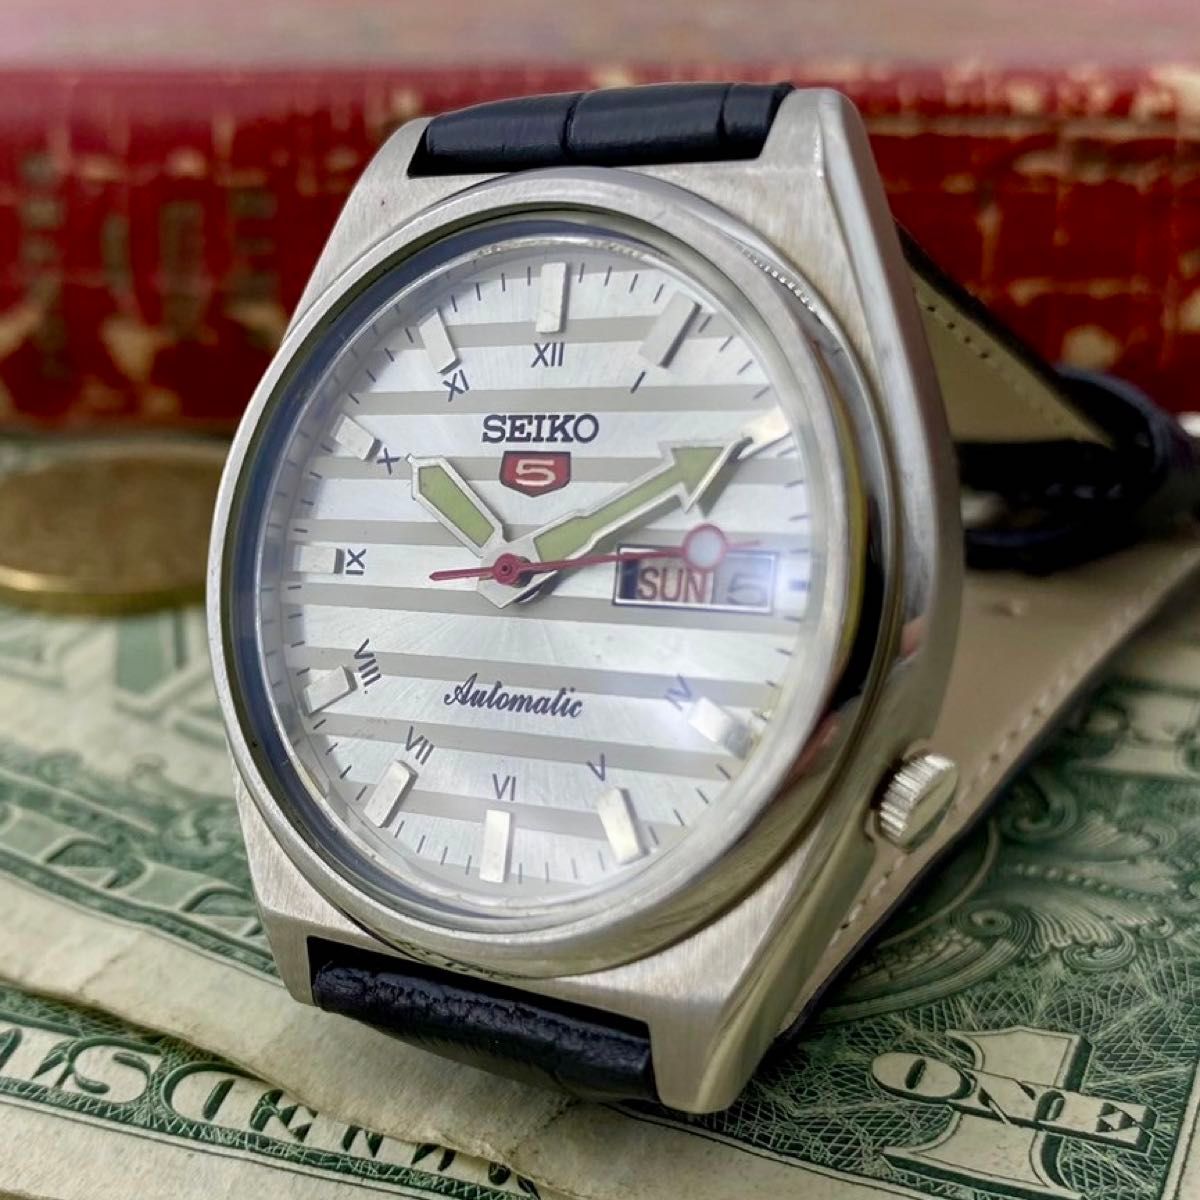 【レトロ可愛い】セイコー5 メンズ腕時計 シルバー ボーダー 自動巻き 